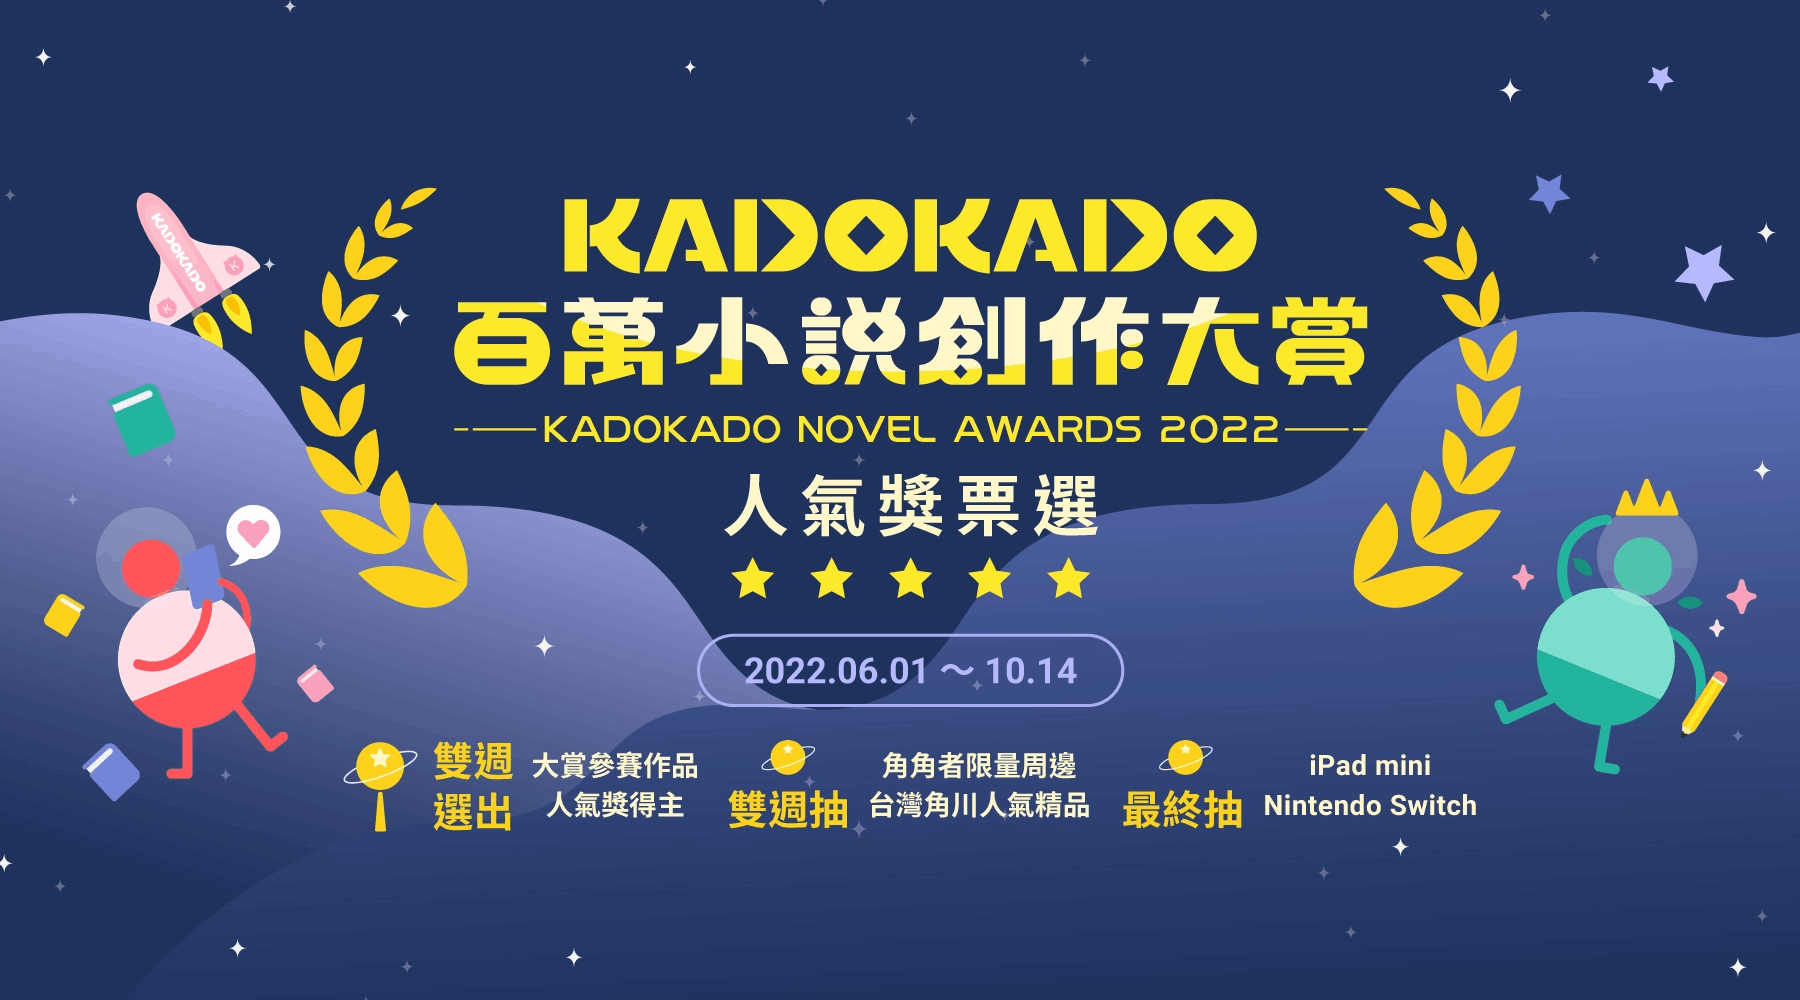 KadoKado 百萬小說創作大賞 - 人氣獎票選